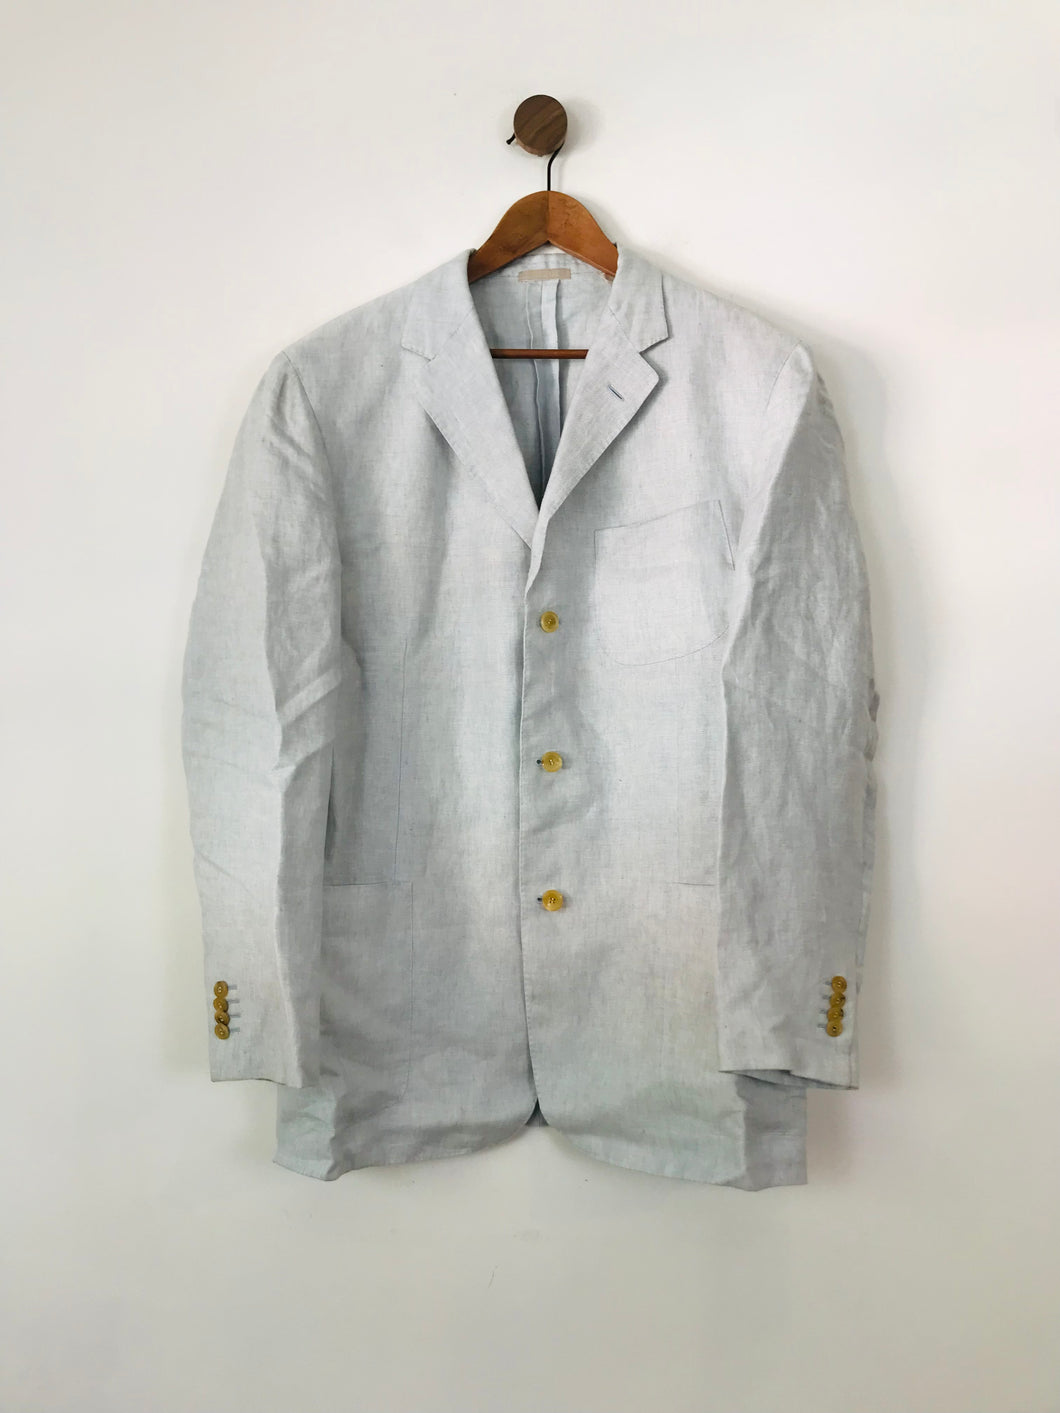 Baldessarini Hugo Boss Men's Linen Blazer Jacket | 52 UK42 | Blue